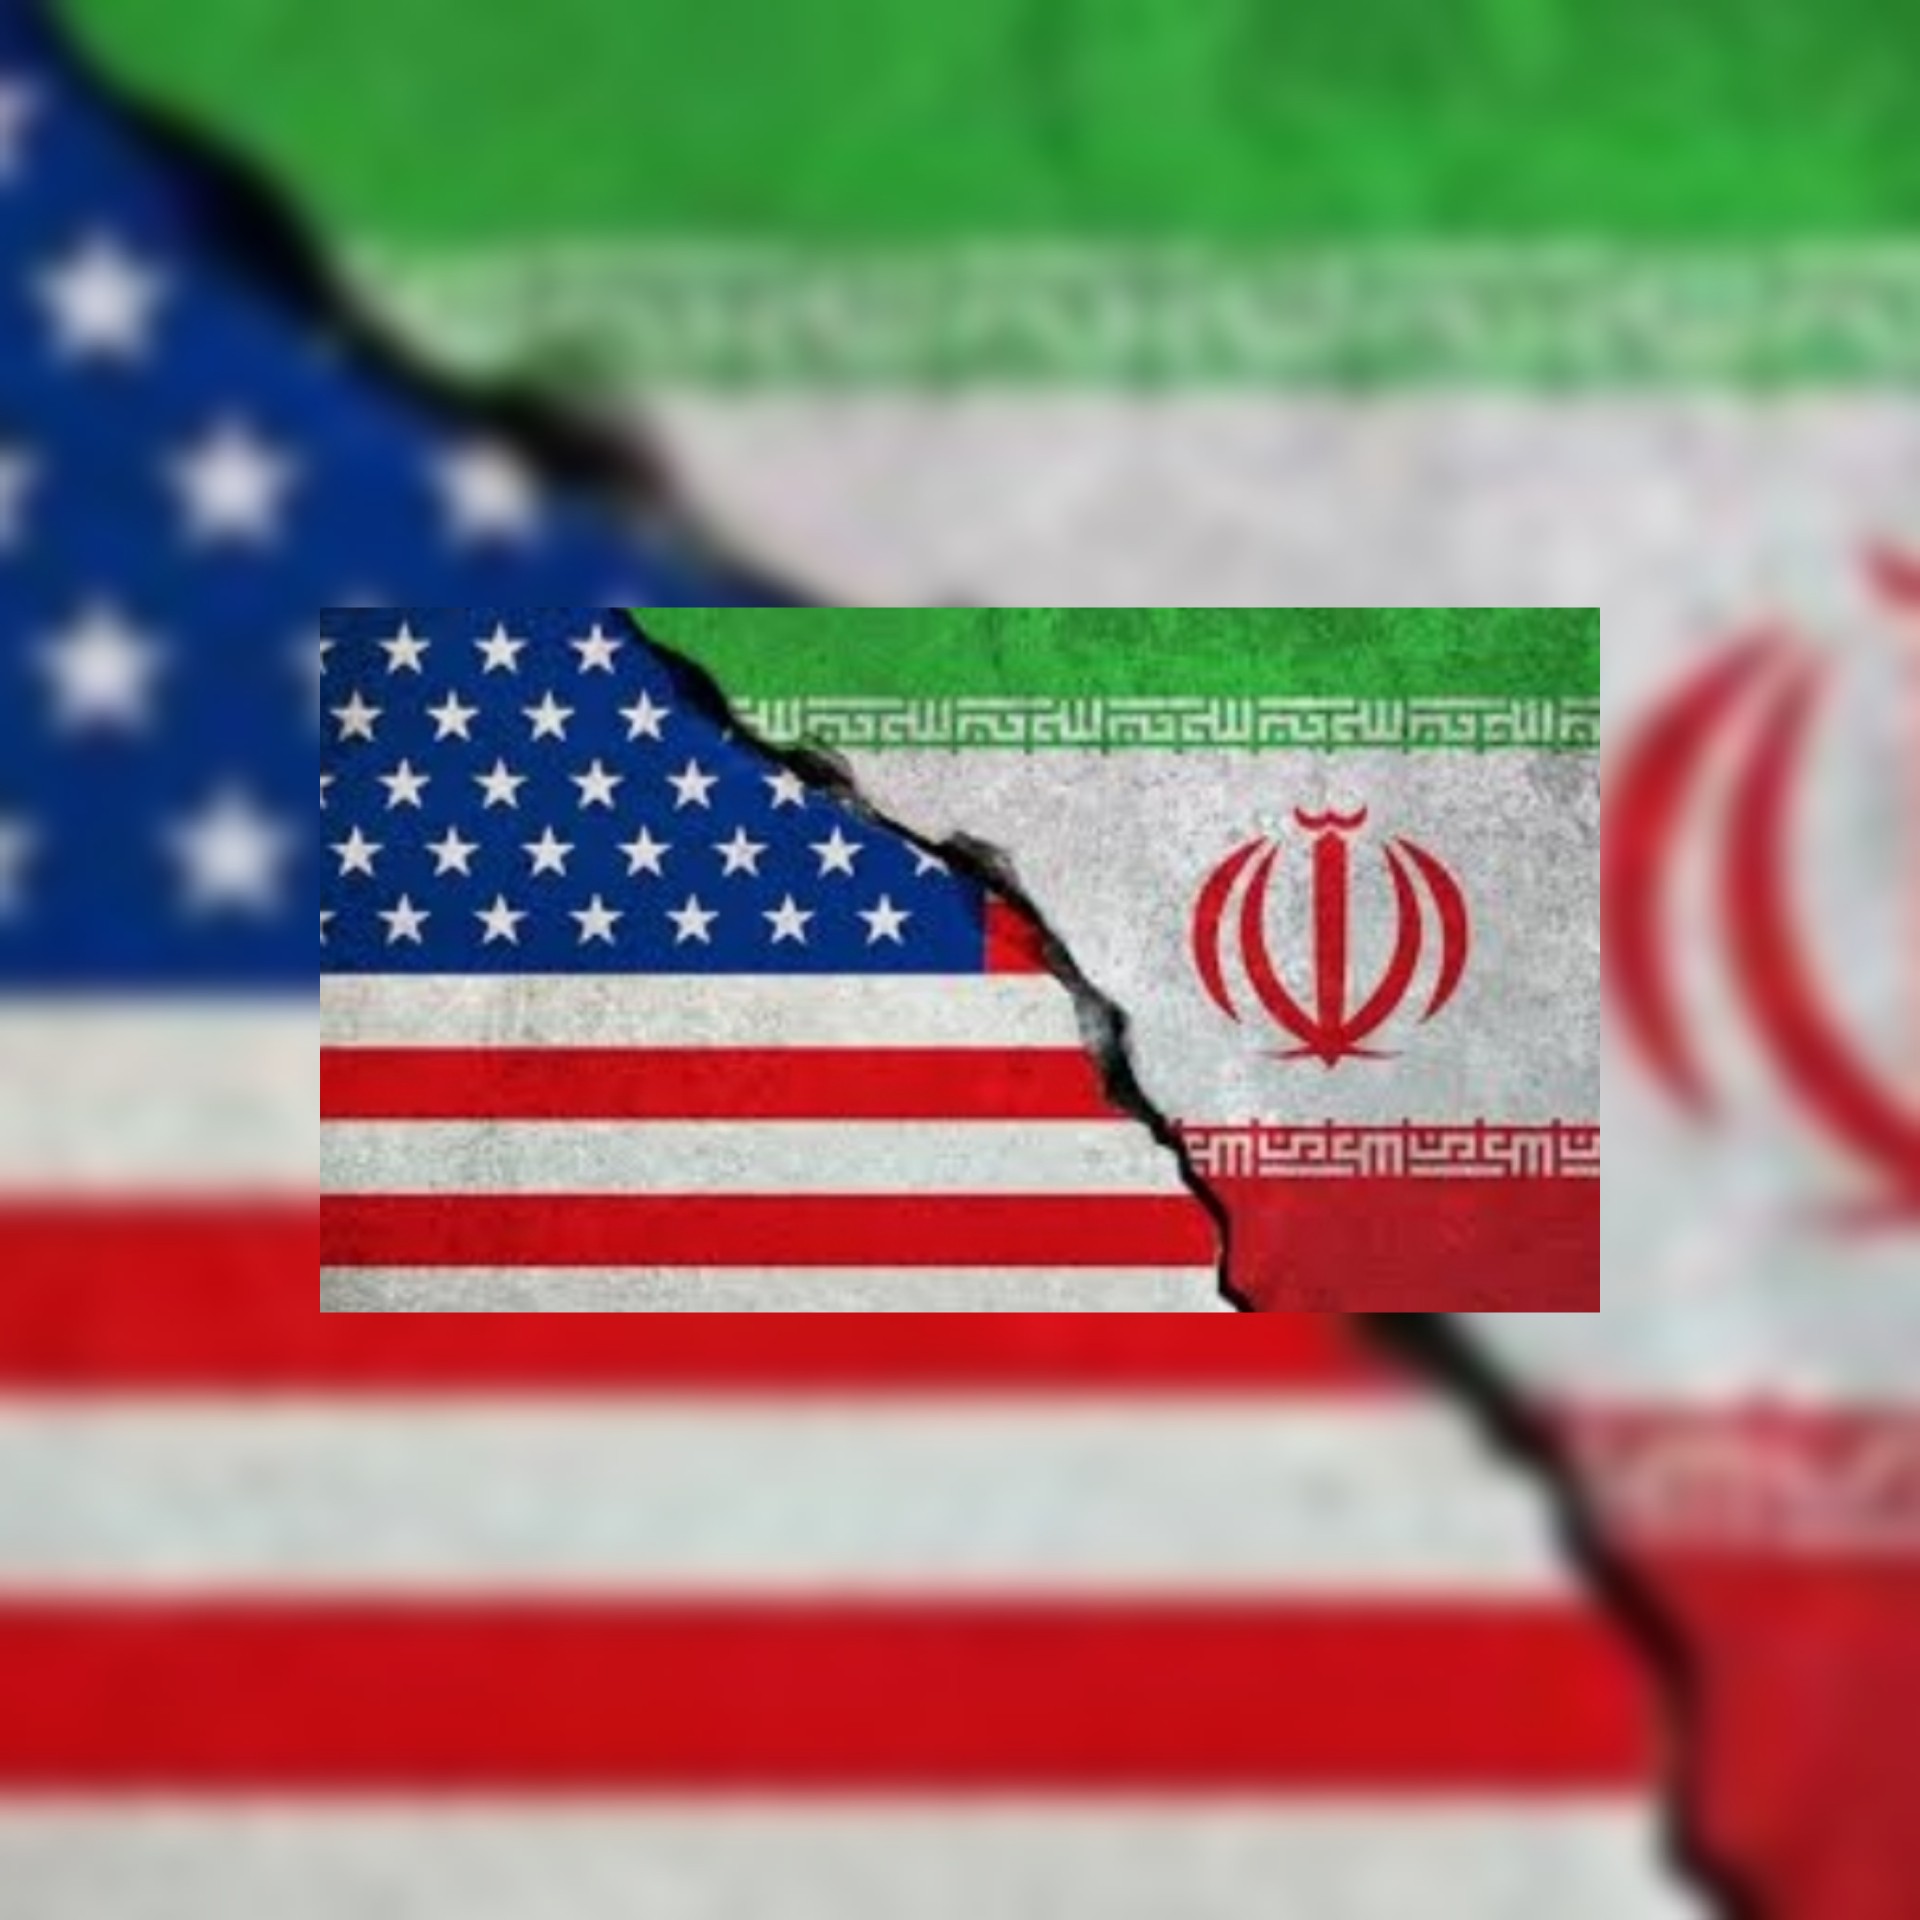 واشنطن تأمل استئنافا سريعا لمفاوضات فيينا و قلق أميركي إسرائيلي من أن البرنامج النووي الإيراني تجاوز الحدود كثيراً